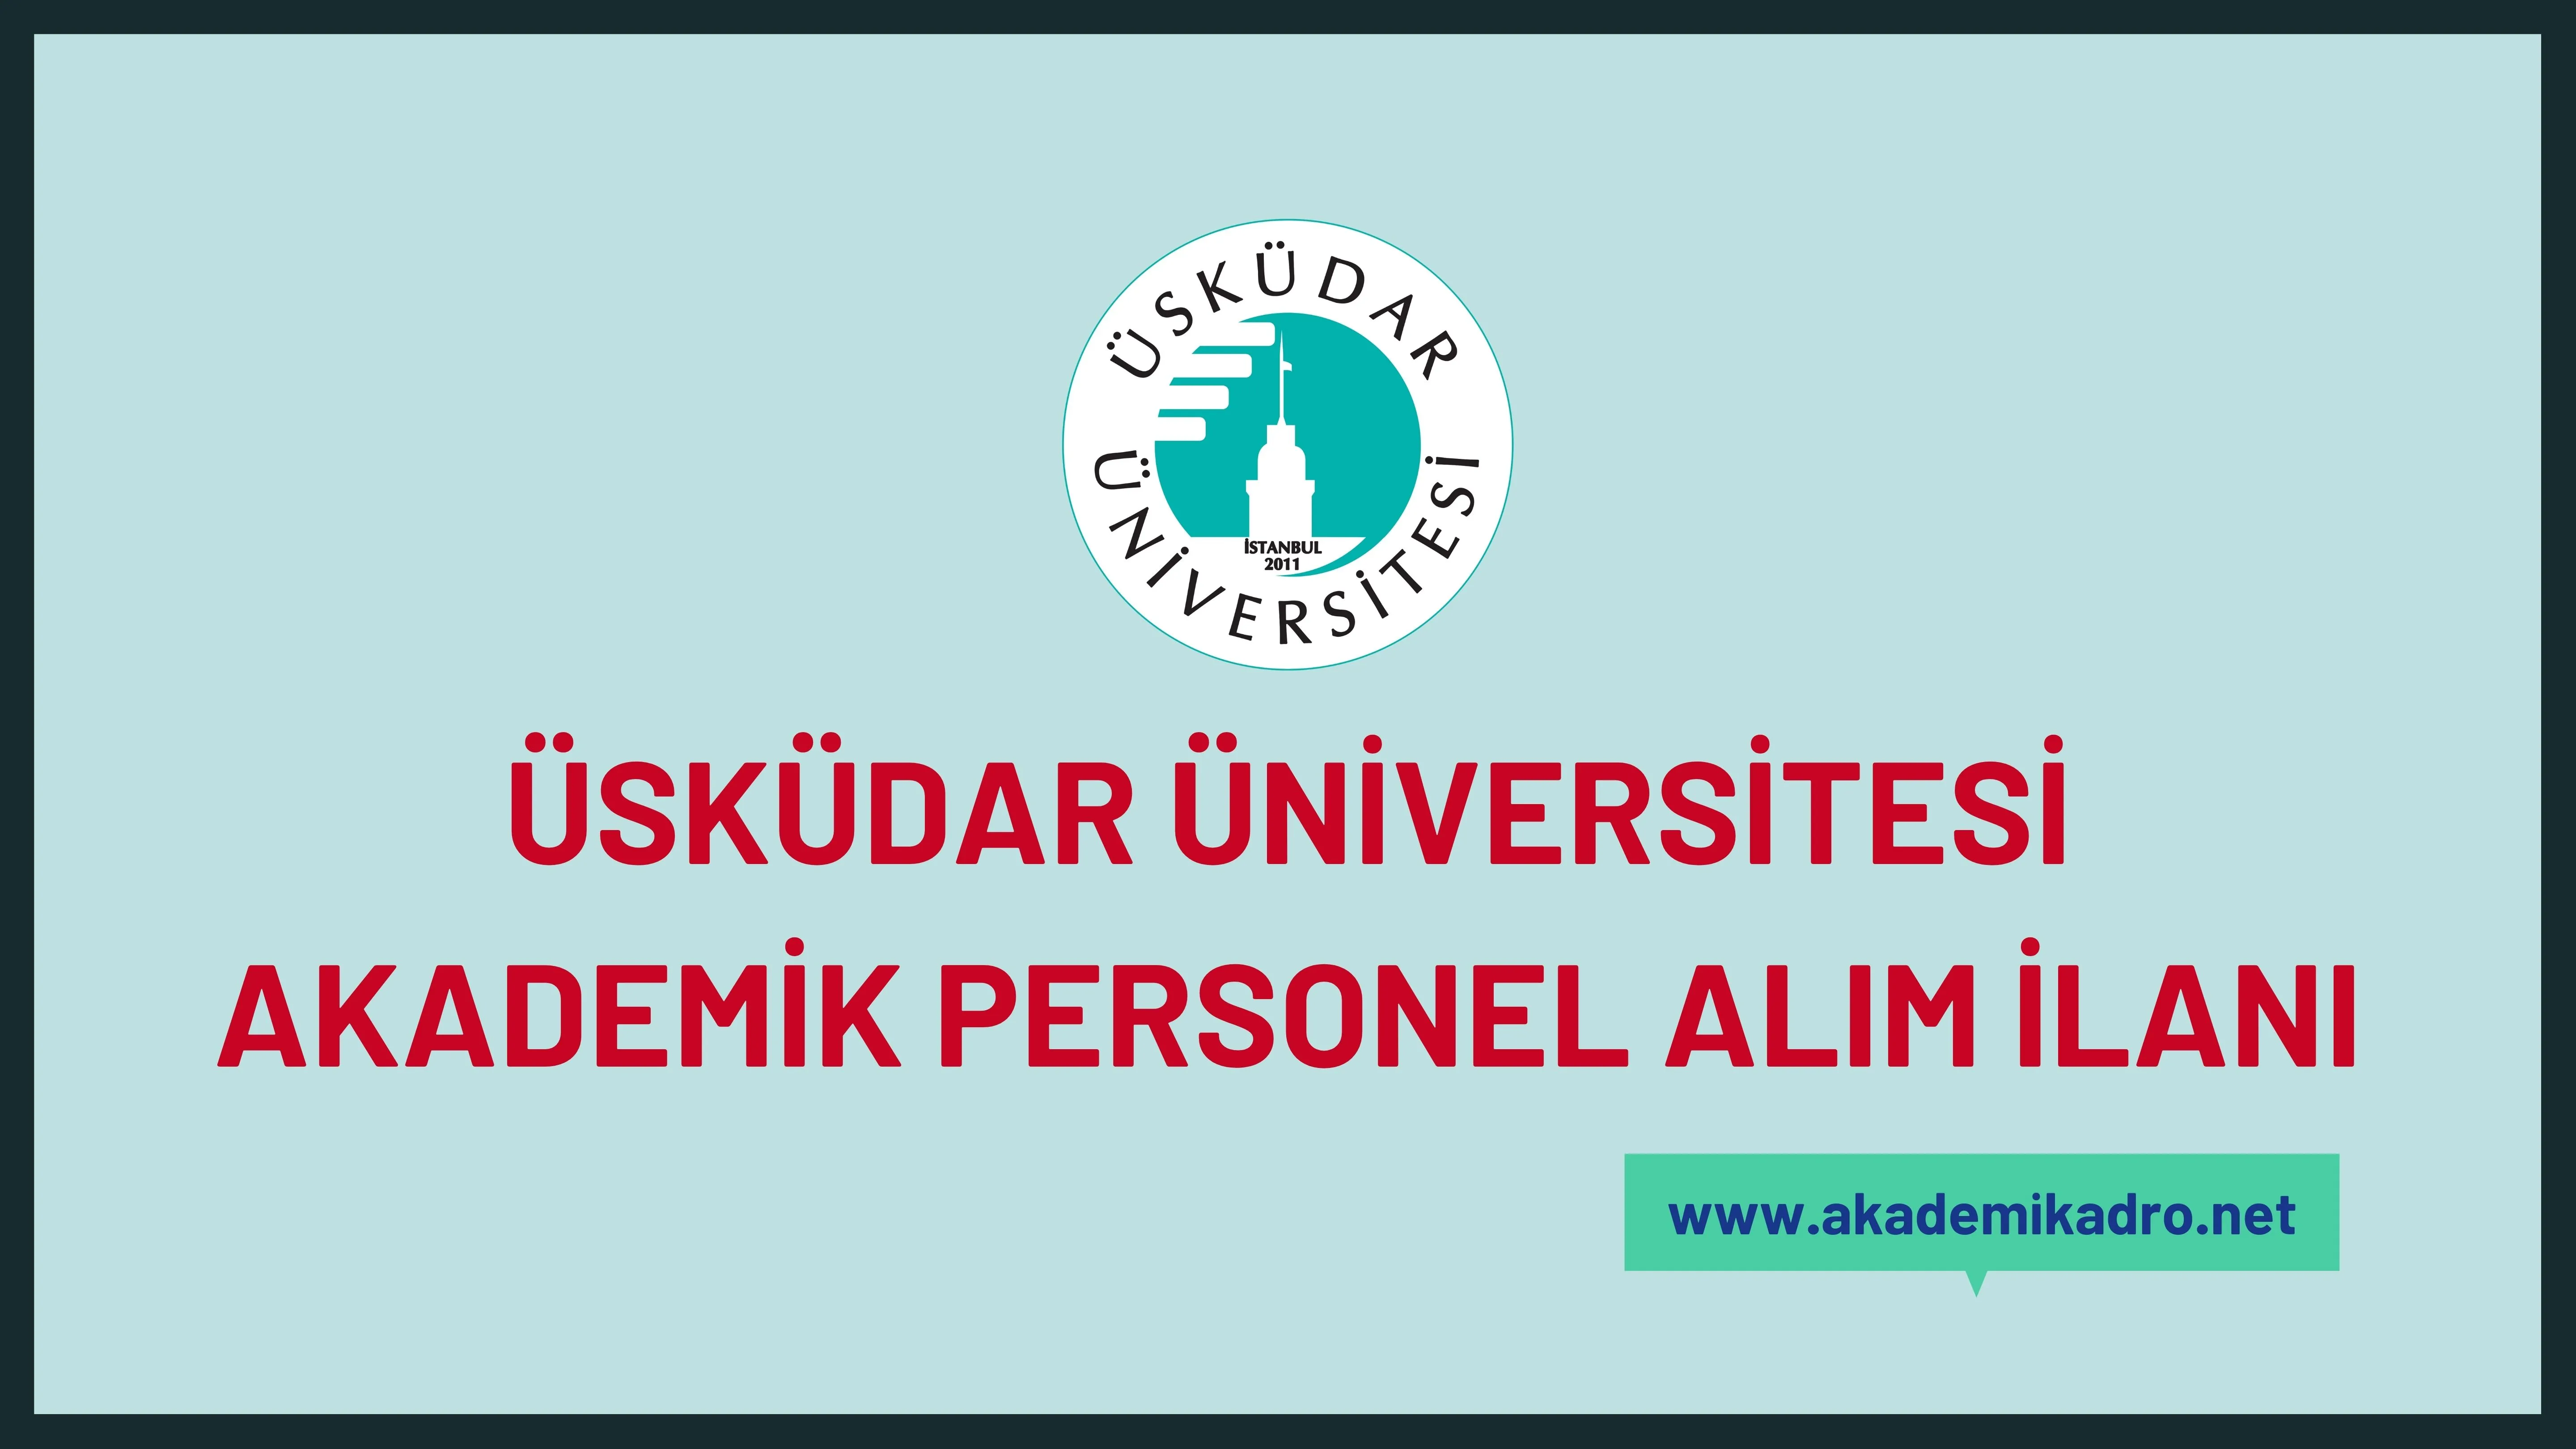 Üsküdar Üniversitesi 7 Öğretim Görevlisi ve 81 öğretim üyesi alacaktır.